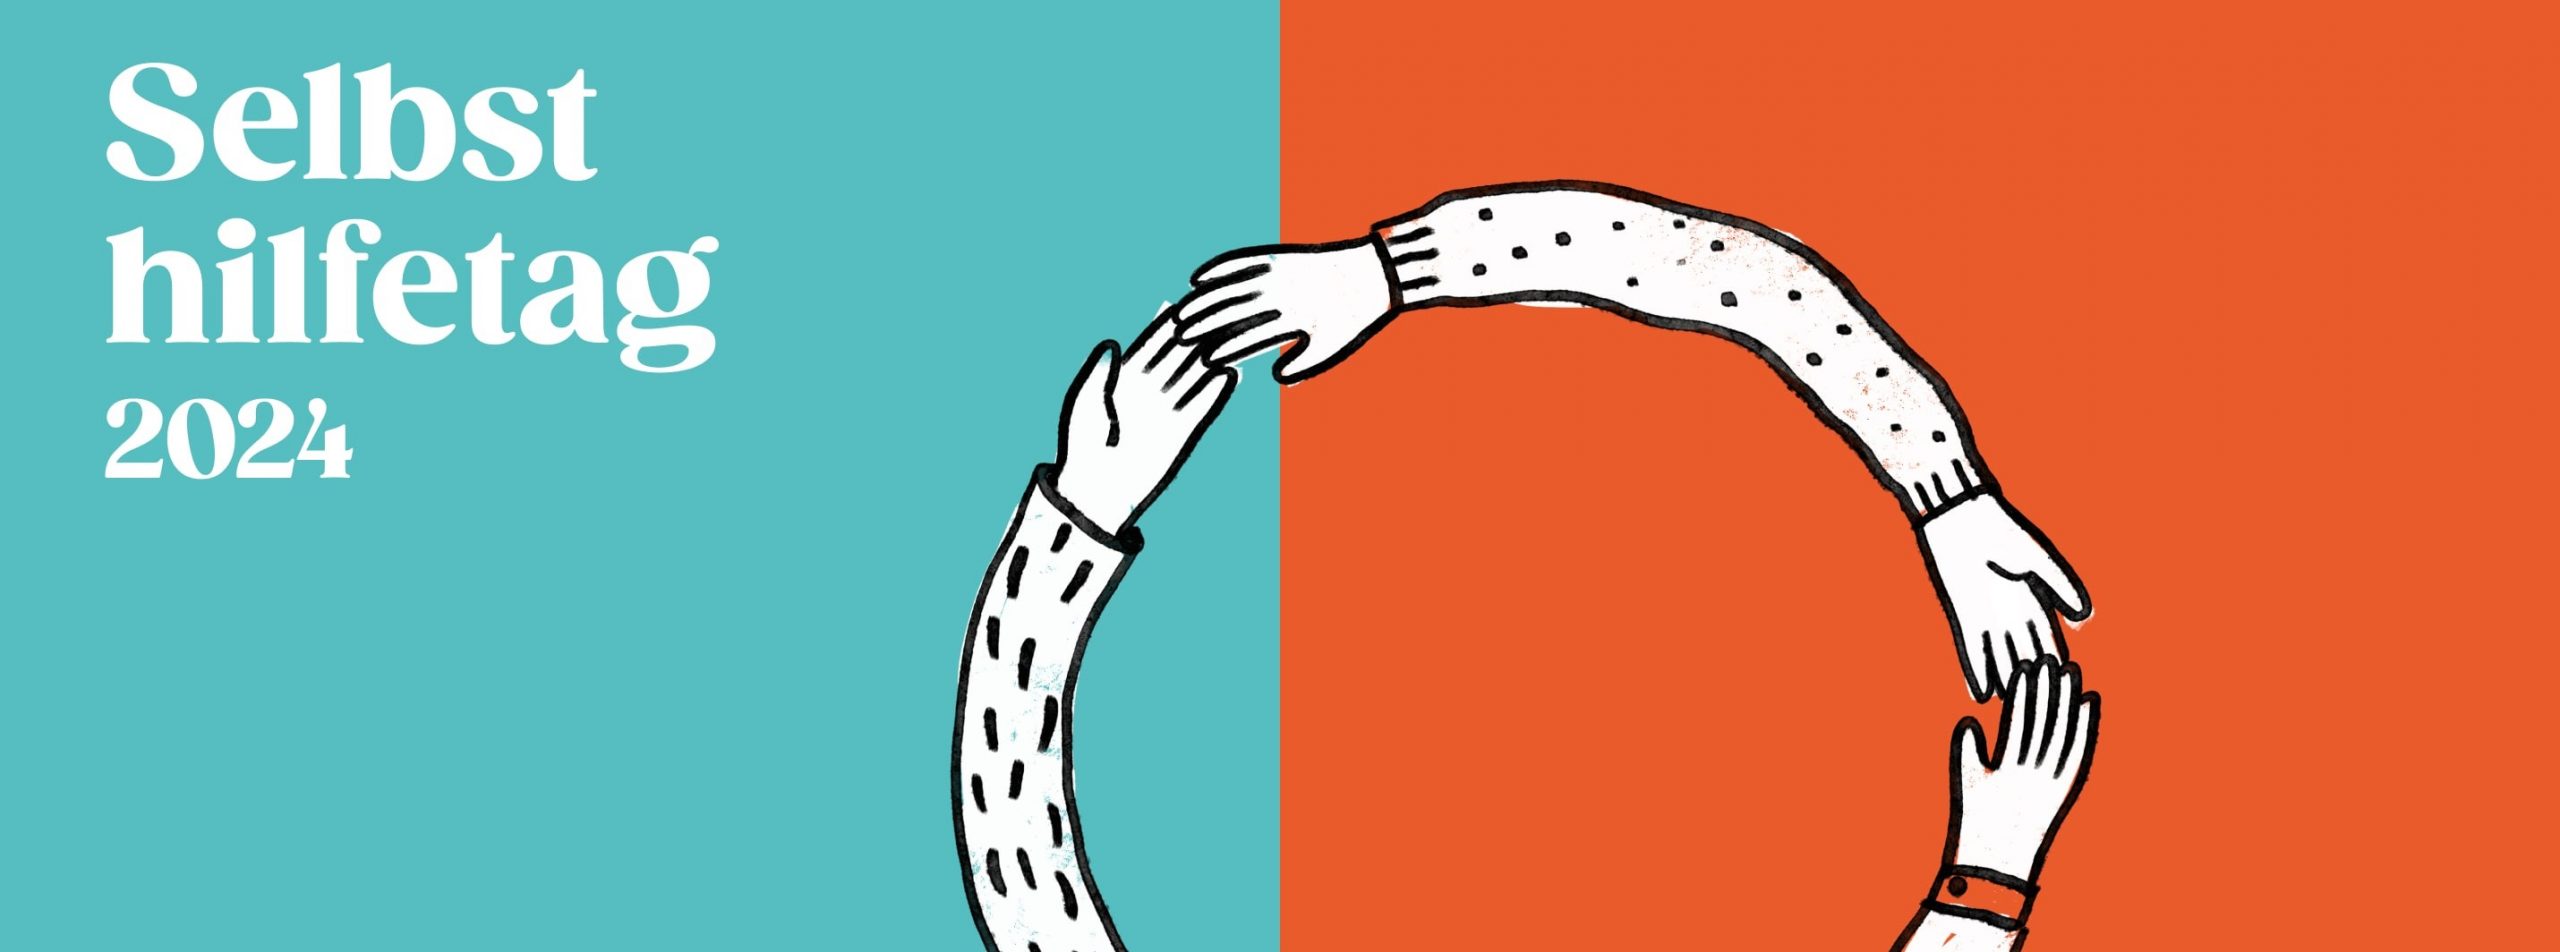 Bild: Banner Selbsthilfetag 2024, Hände greifen einander und bilden einen Kreis